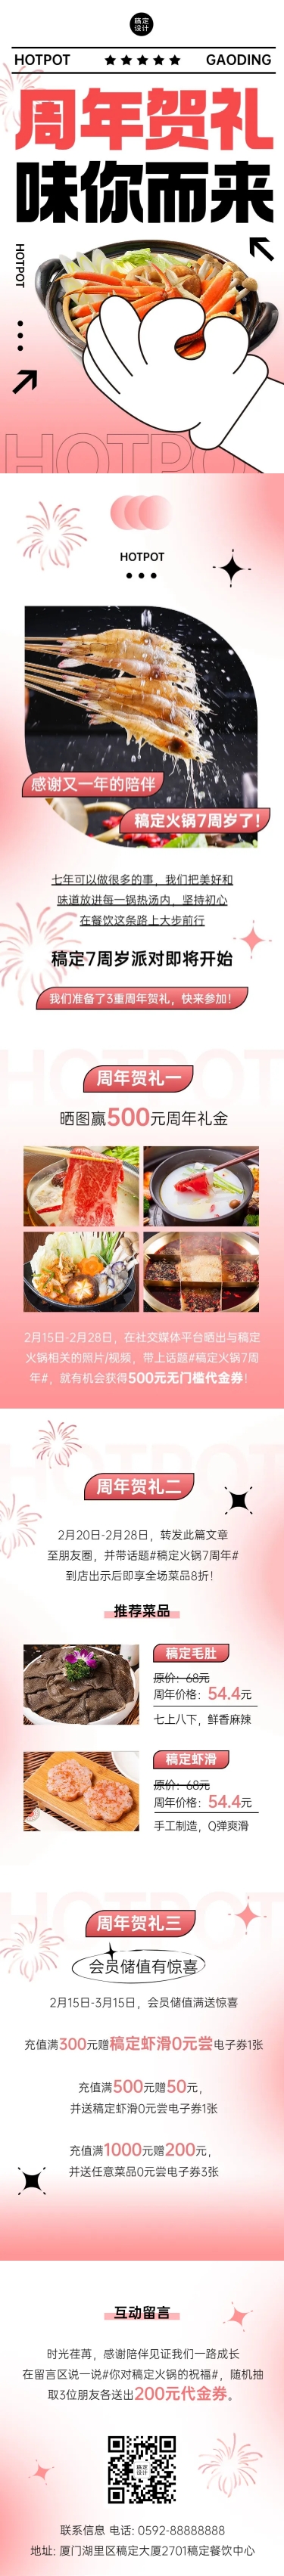 餐饮门店火锅周年店庆文章长图预览效果